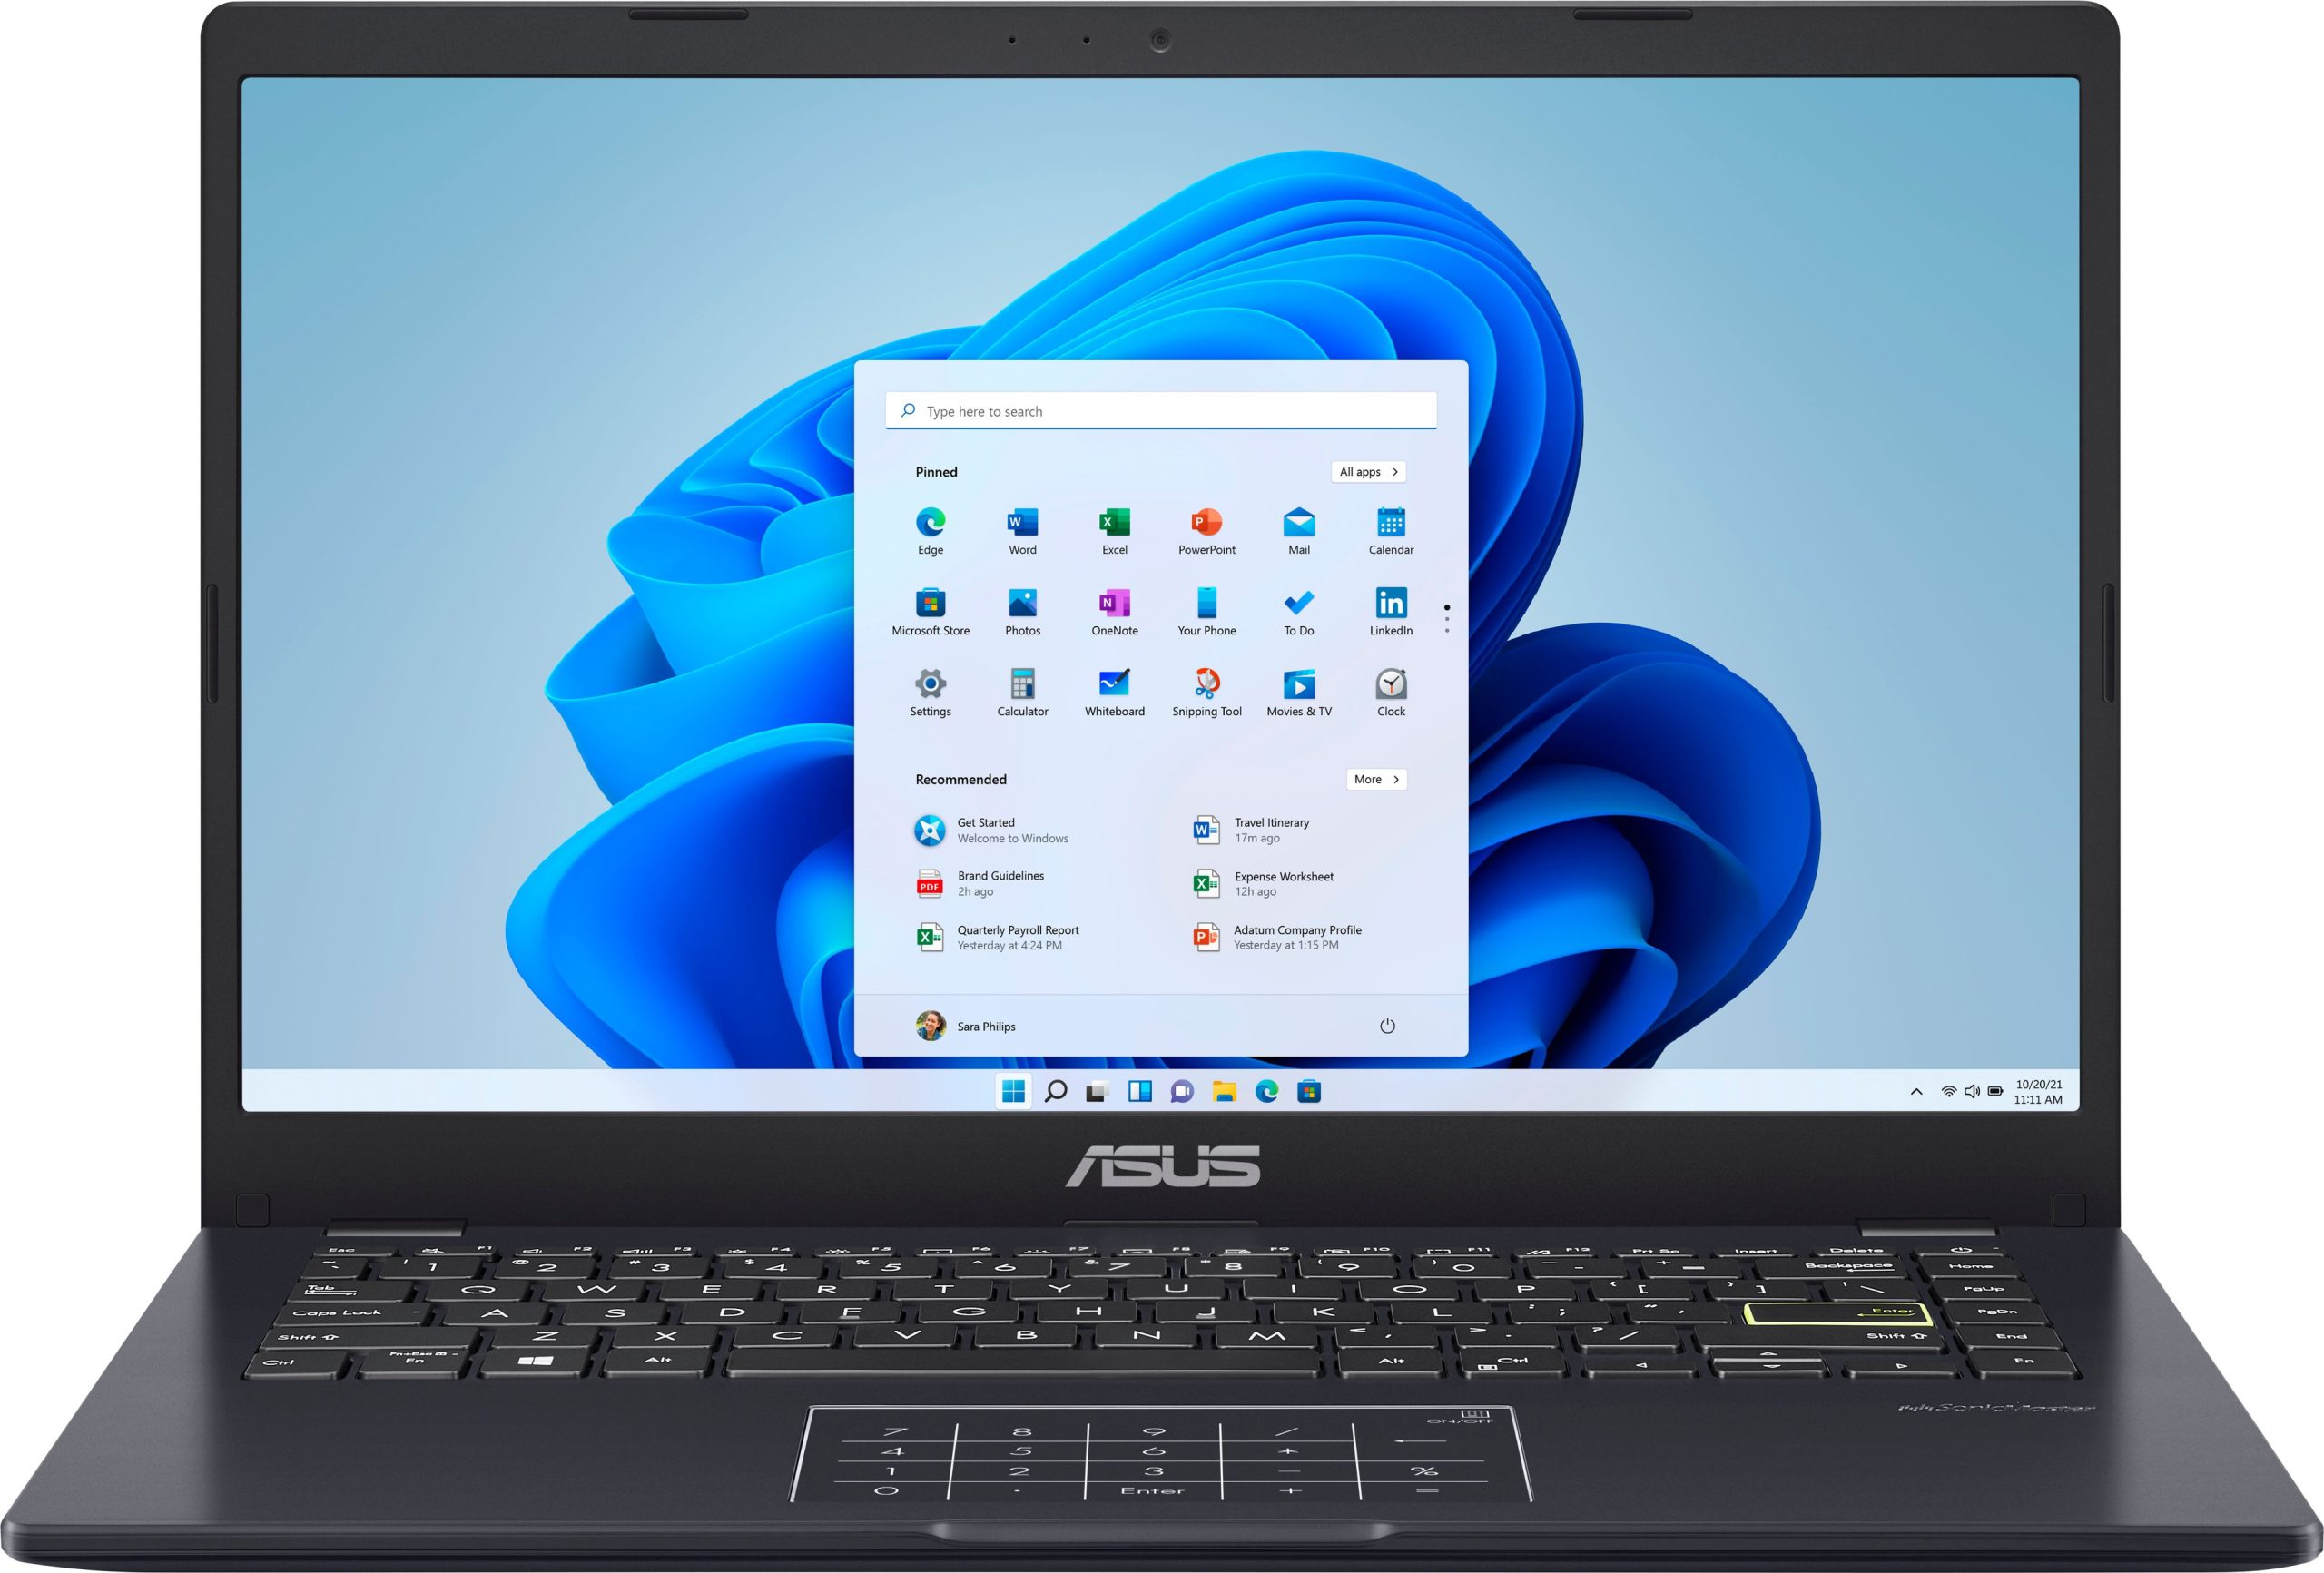 ASUS – 14.0″ Laptop – Intel Celeron N4020 – 4GB Memory – 64GB eMMC – Star Black – Just $129.99 at Best Buy